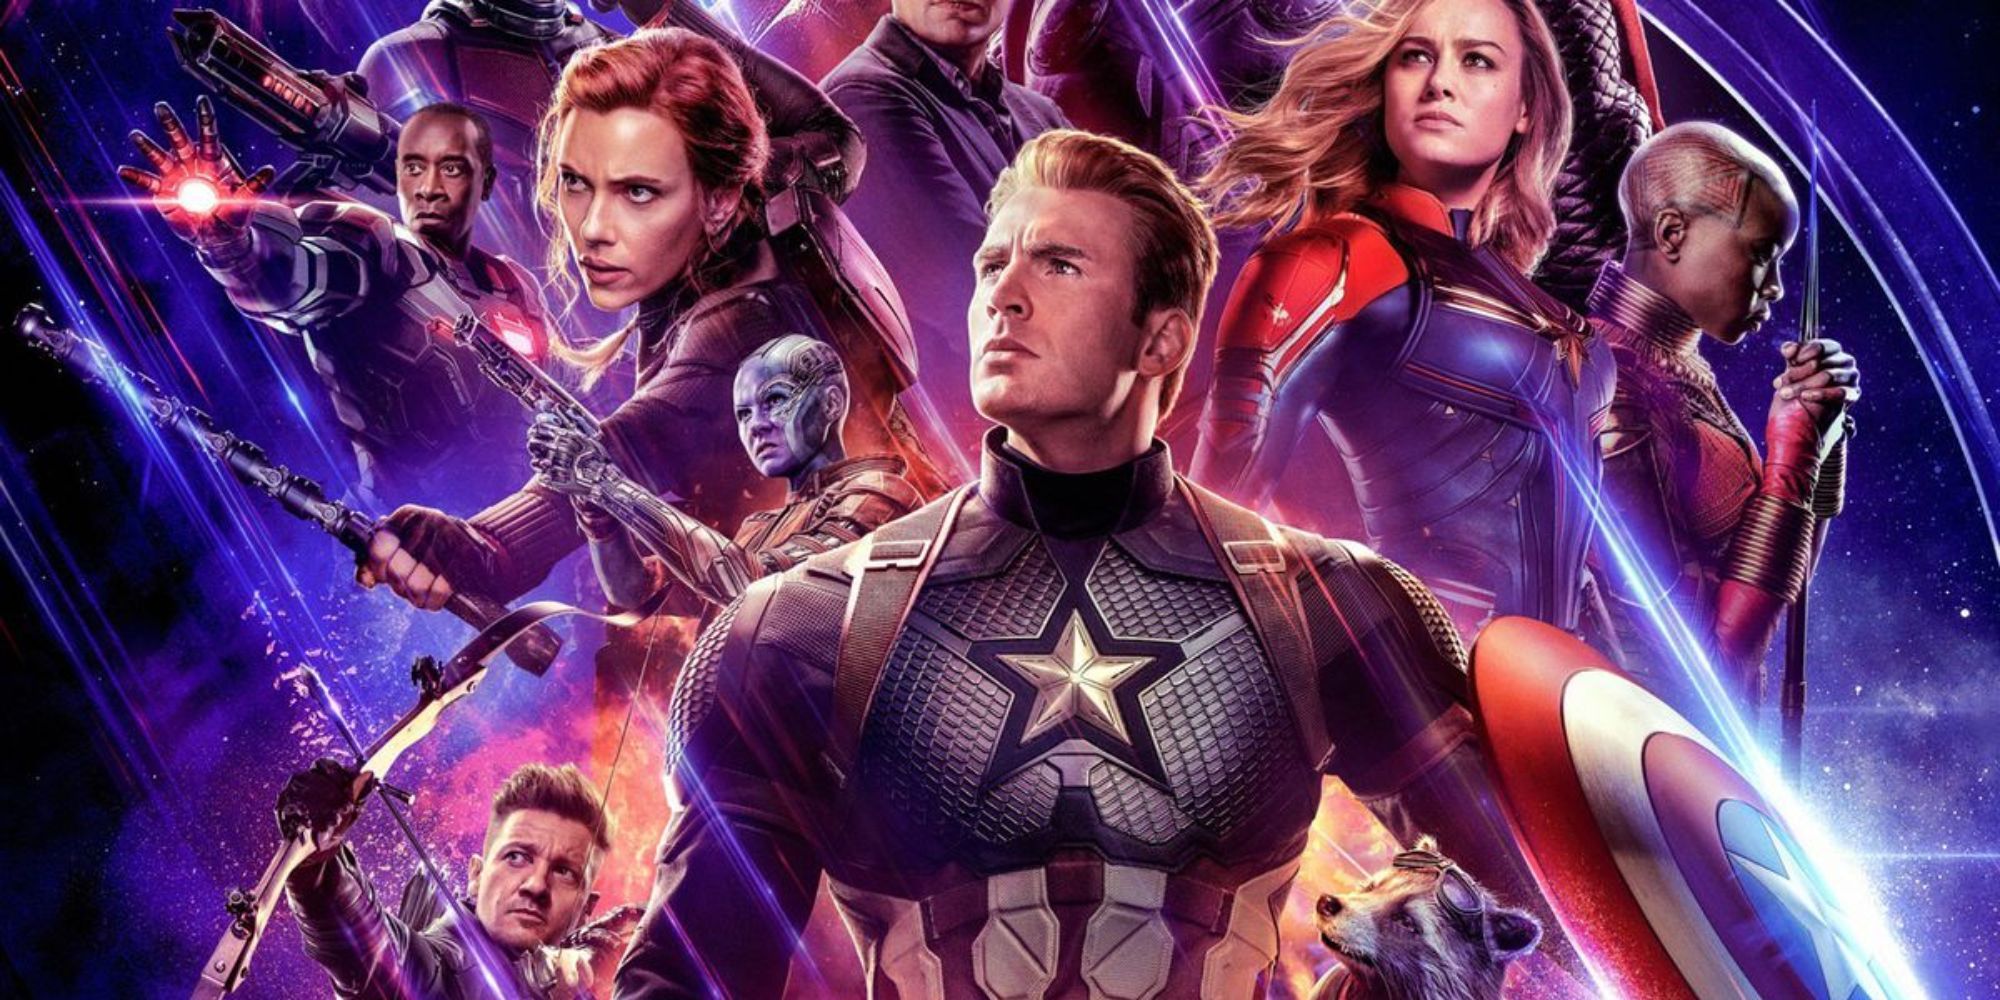 marvel disney mcu avengers endgame 2019 movie poster